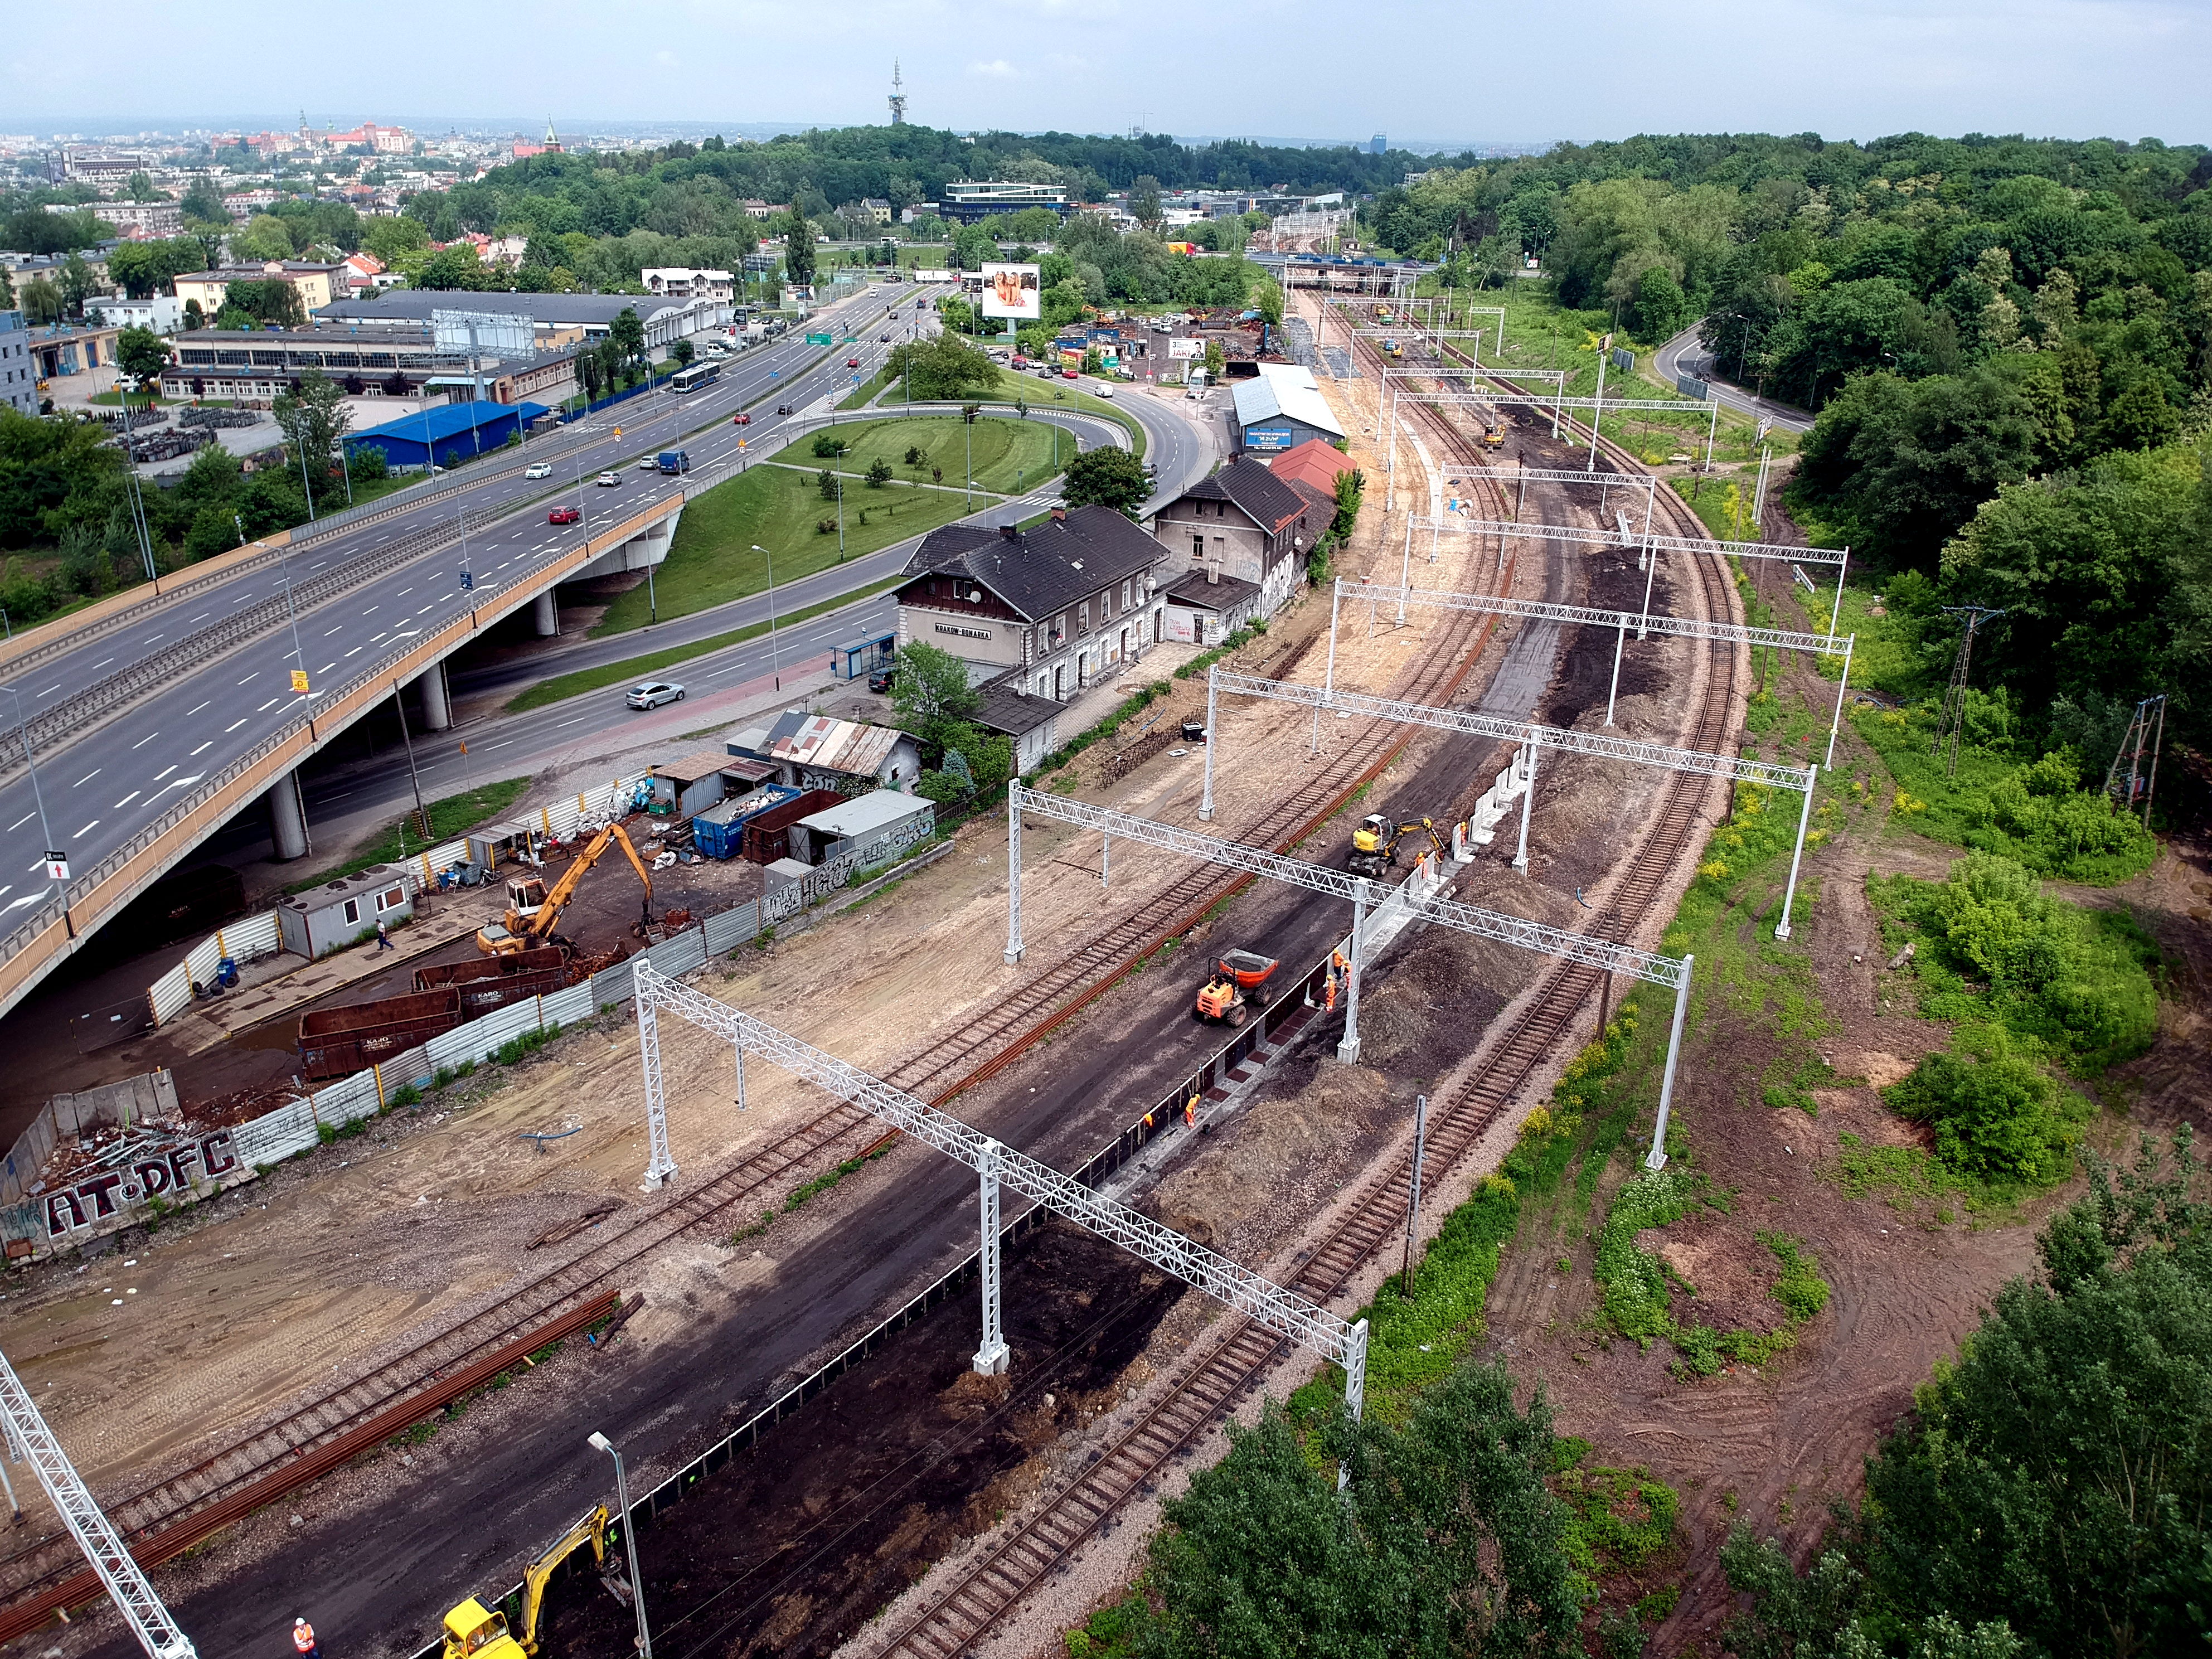 Prace budowlane na torze kolejowym, Kraków - Railway construction